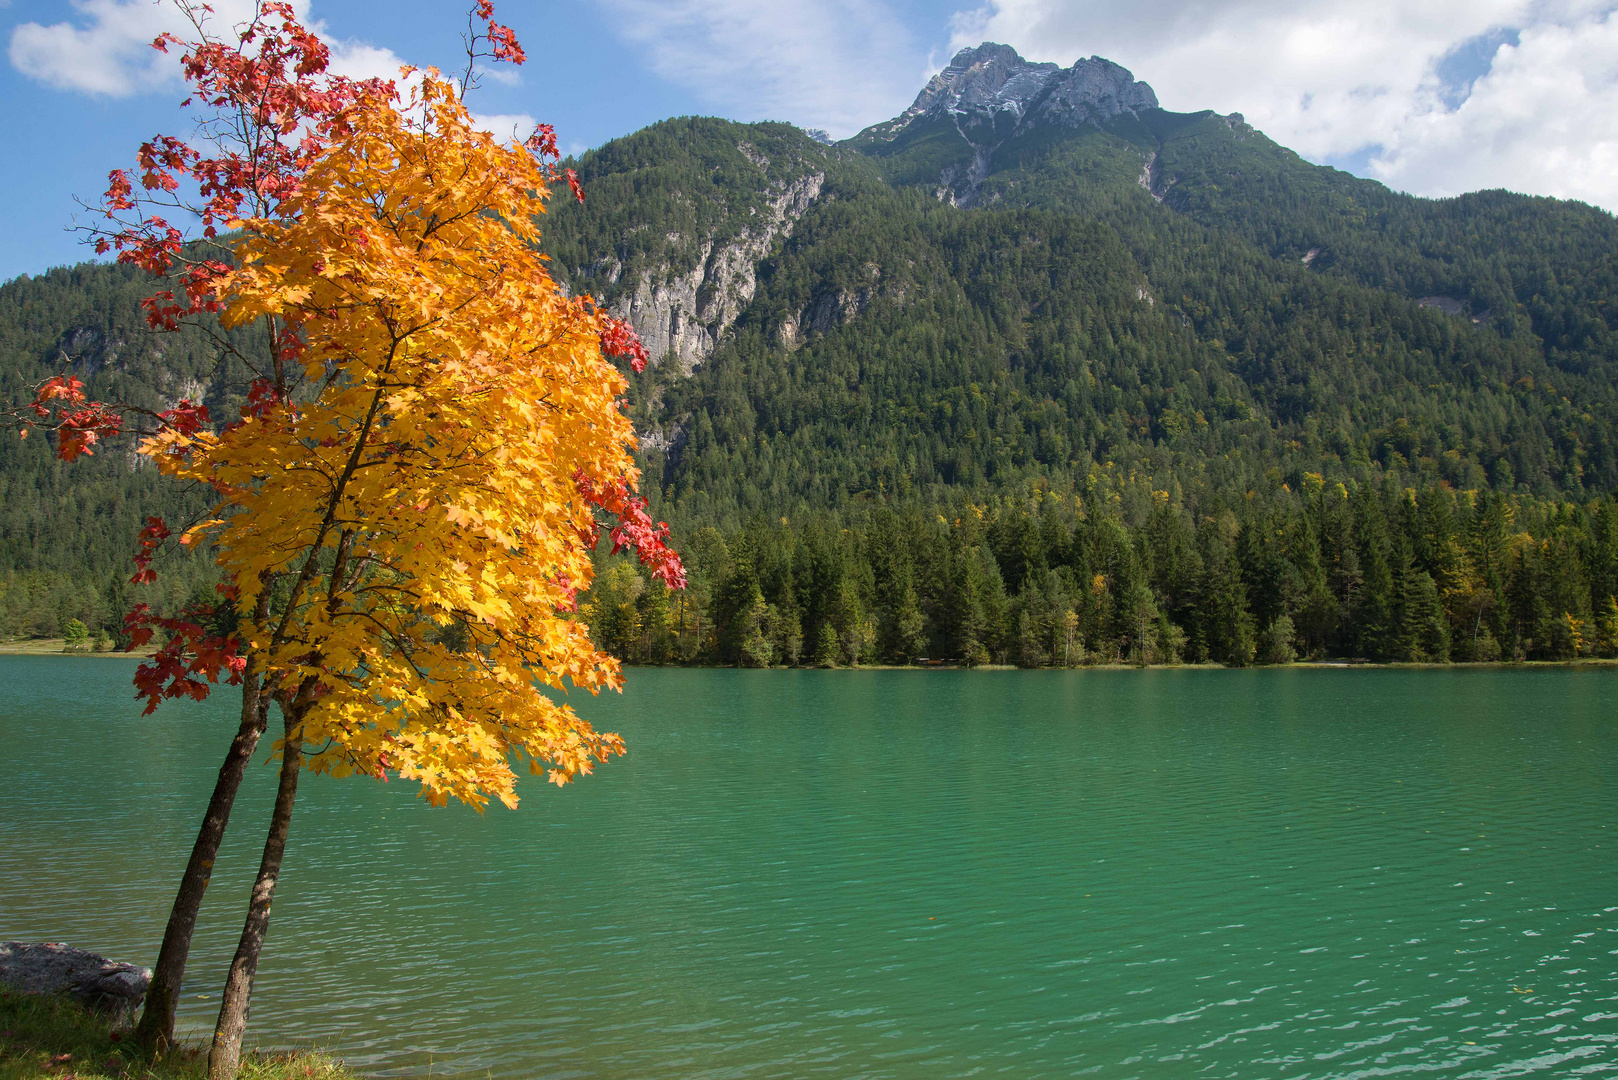 Herbst am Pillersee